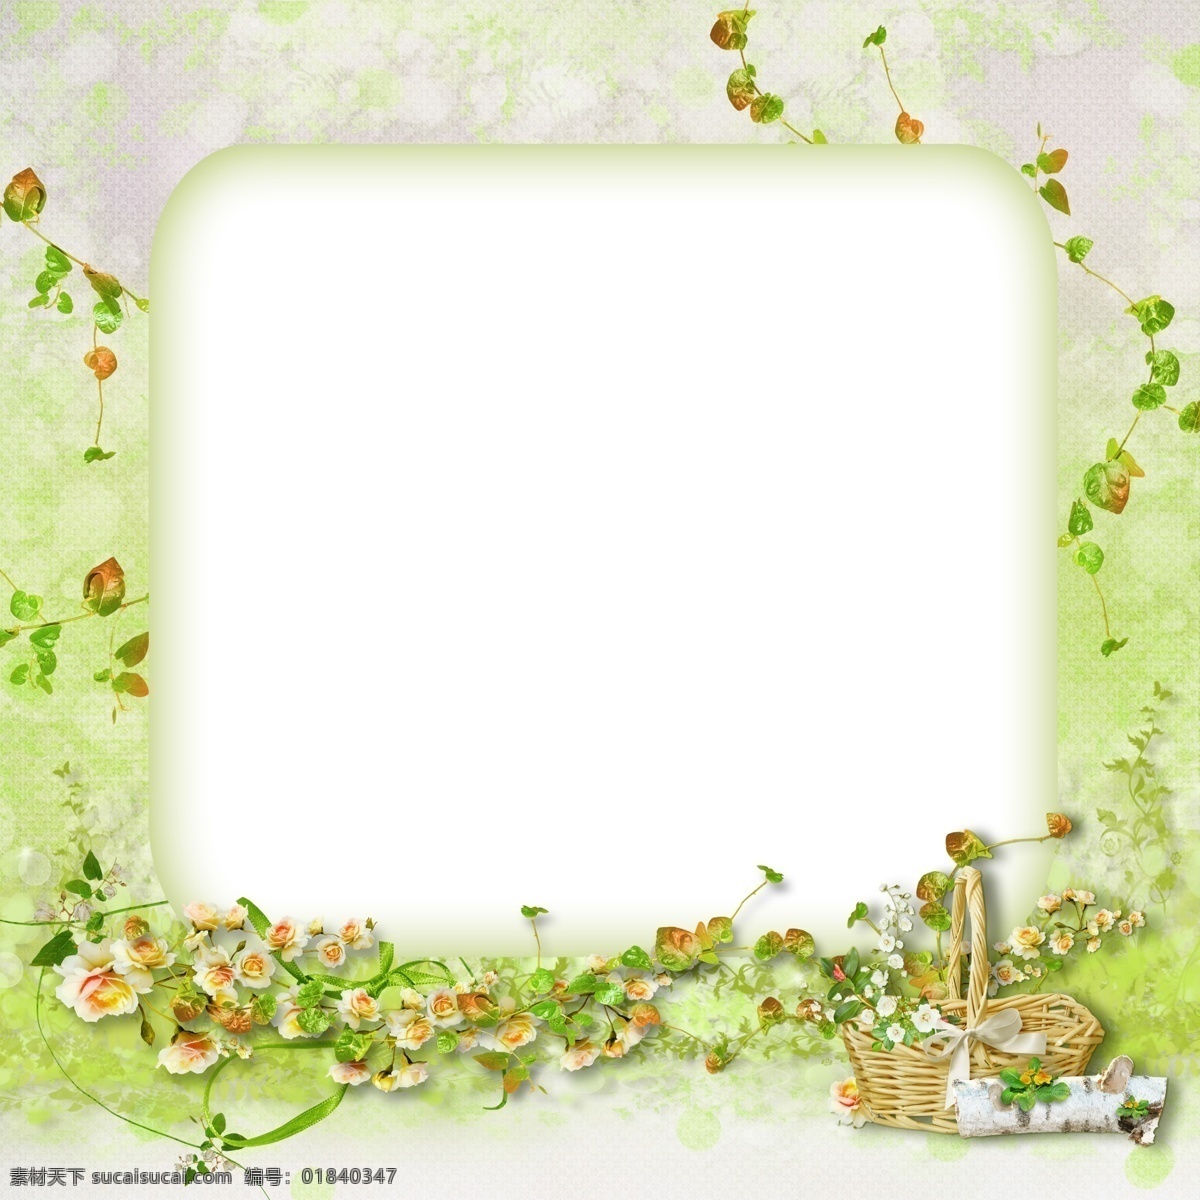 儿童相框 相框 绿色 春天 花篮 花朵 藤蔓 绿叶 儿童 青涩 儿童摄影模板 摄影模板 源文件